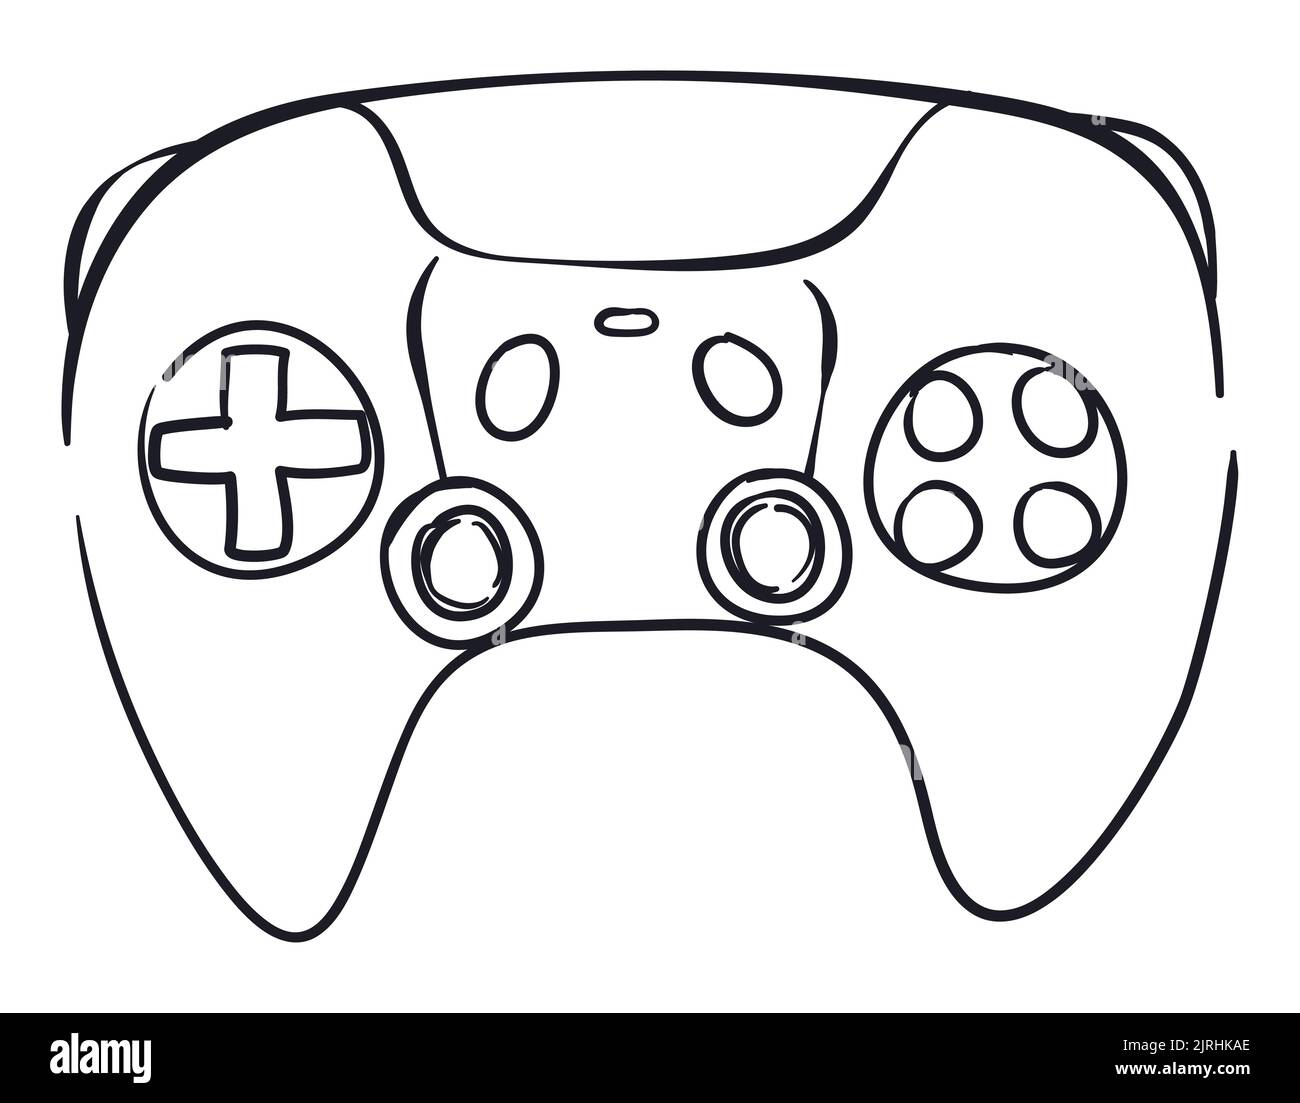 Zeichnung in Frontalansicht eines Videospiel-Controllers: D-Pad, Joysticks, Tasten und Touchpad-Taste. Stock Vektor